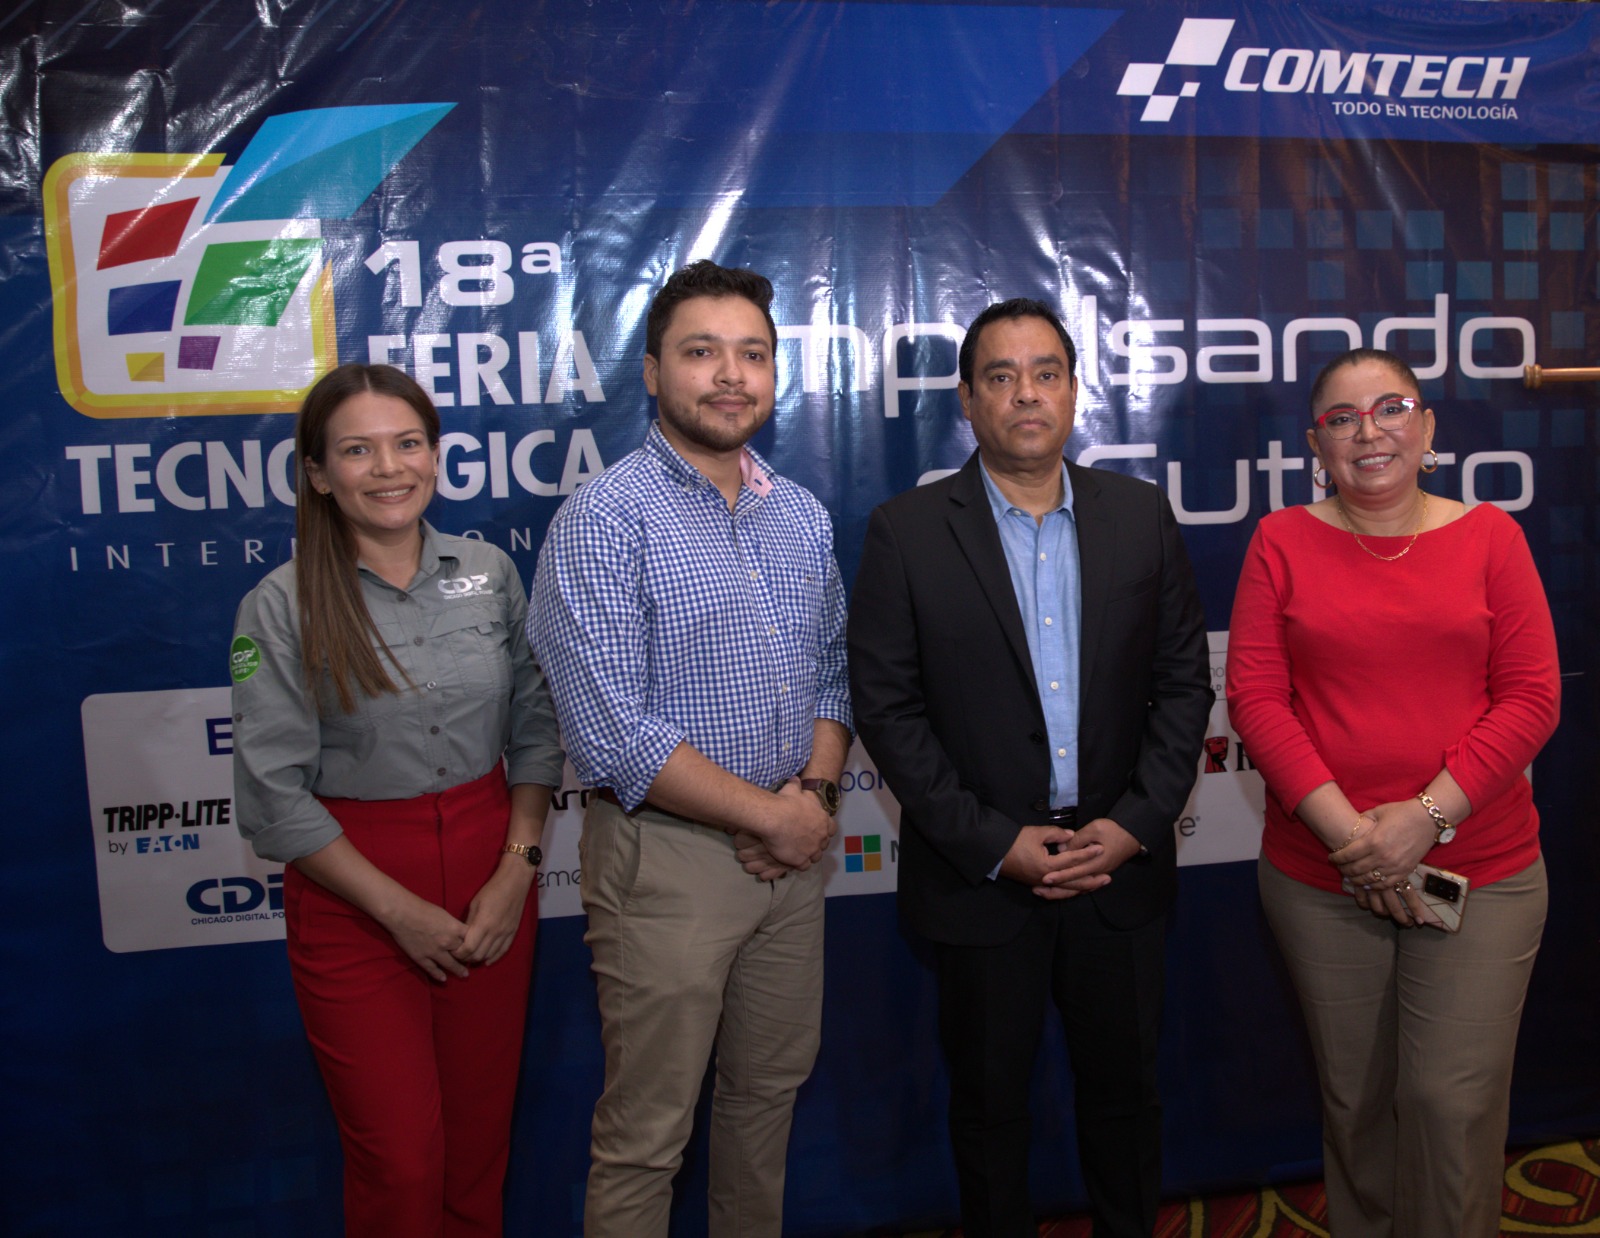 Explorando la Vanguardia Tecnológica: Destacados de la 18.ª Feria Tecnológica en Nicaragua